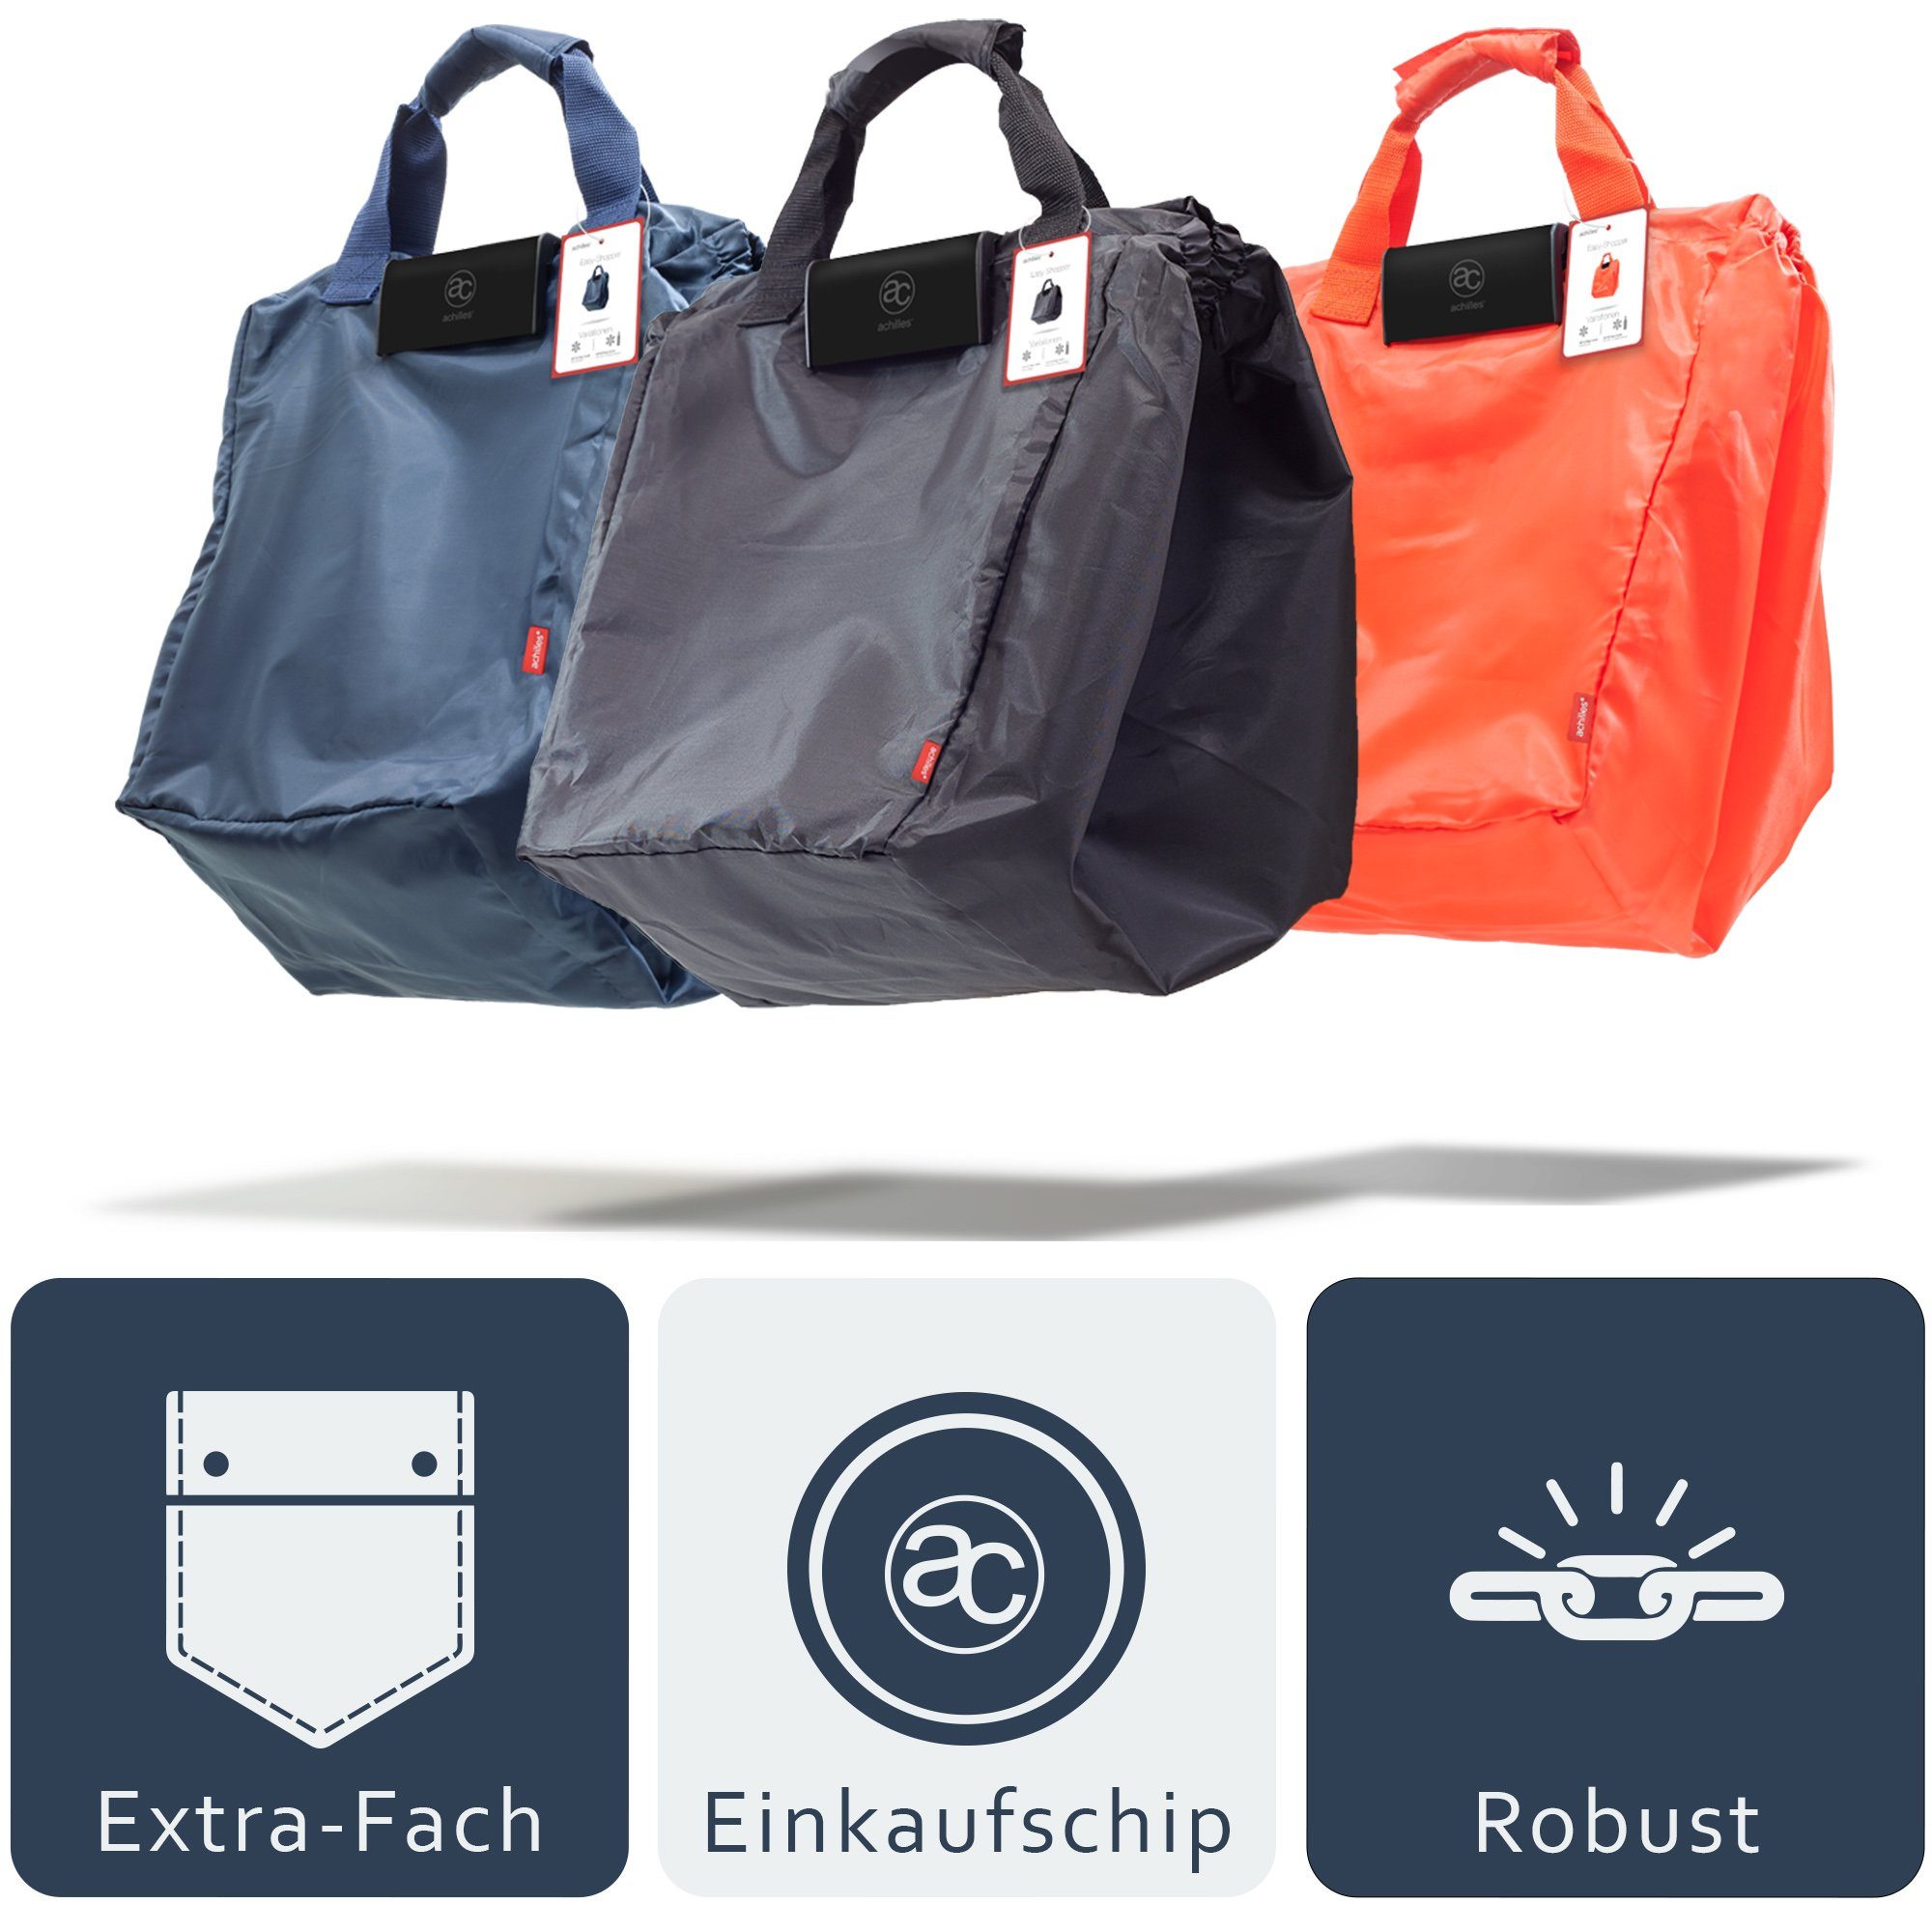 achilles Einkaufsshopper Easy-Shopper "Combi" Faltbare Einkaufswagentasche Einkaufstasche, navy l 40 blau